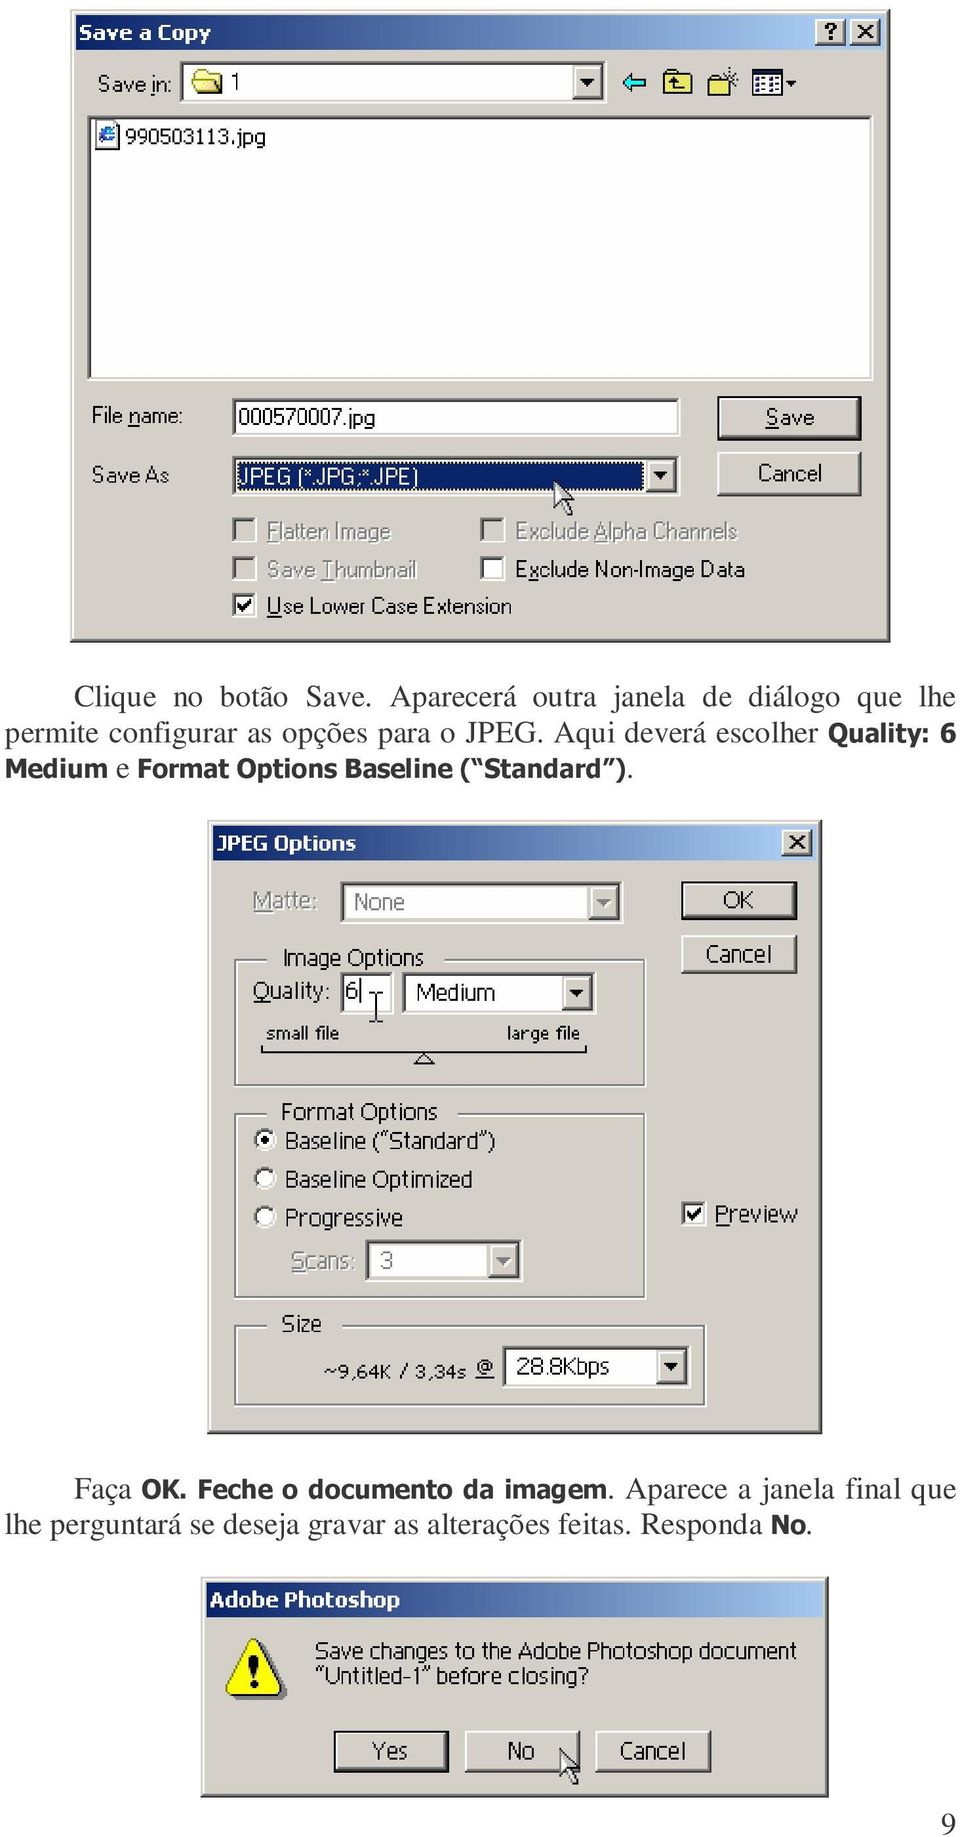 JPEG. Aqui deverá escolher Quality: 6 Medium e Format Options Baseline (